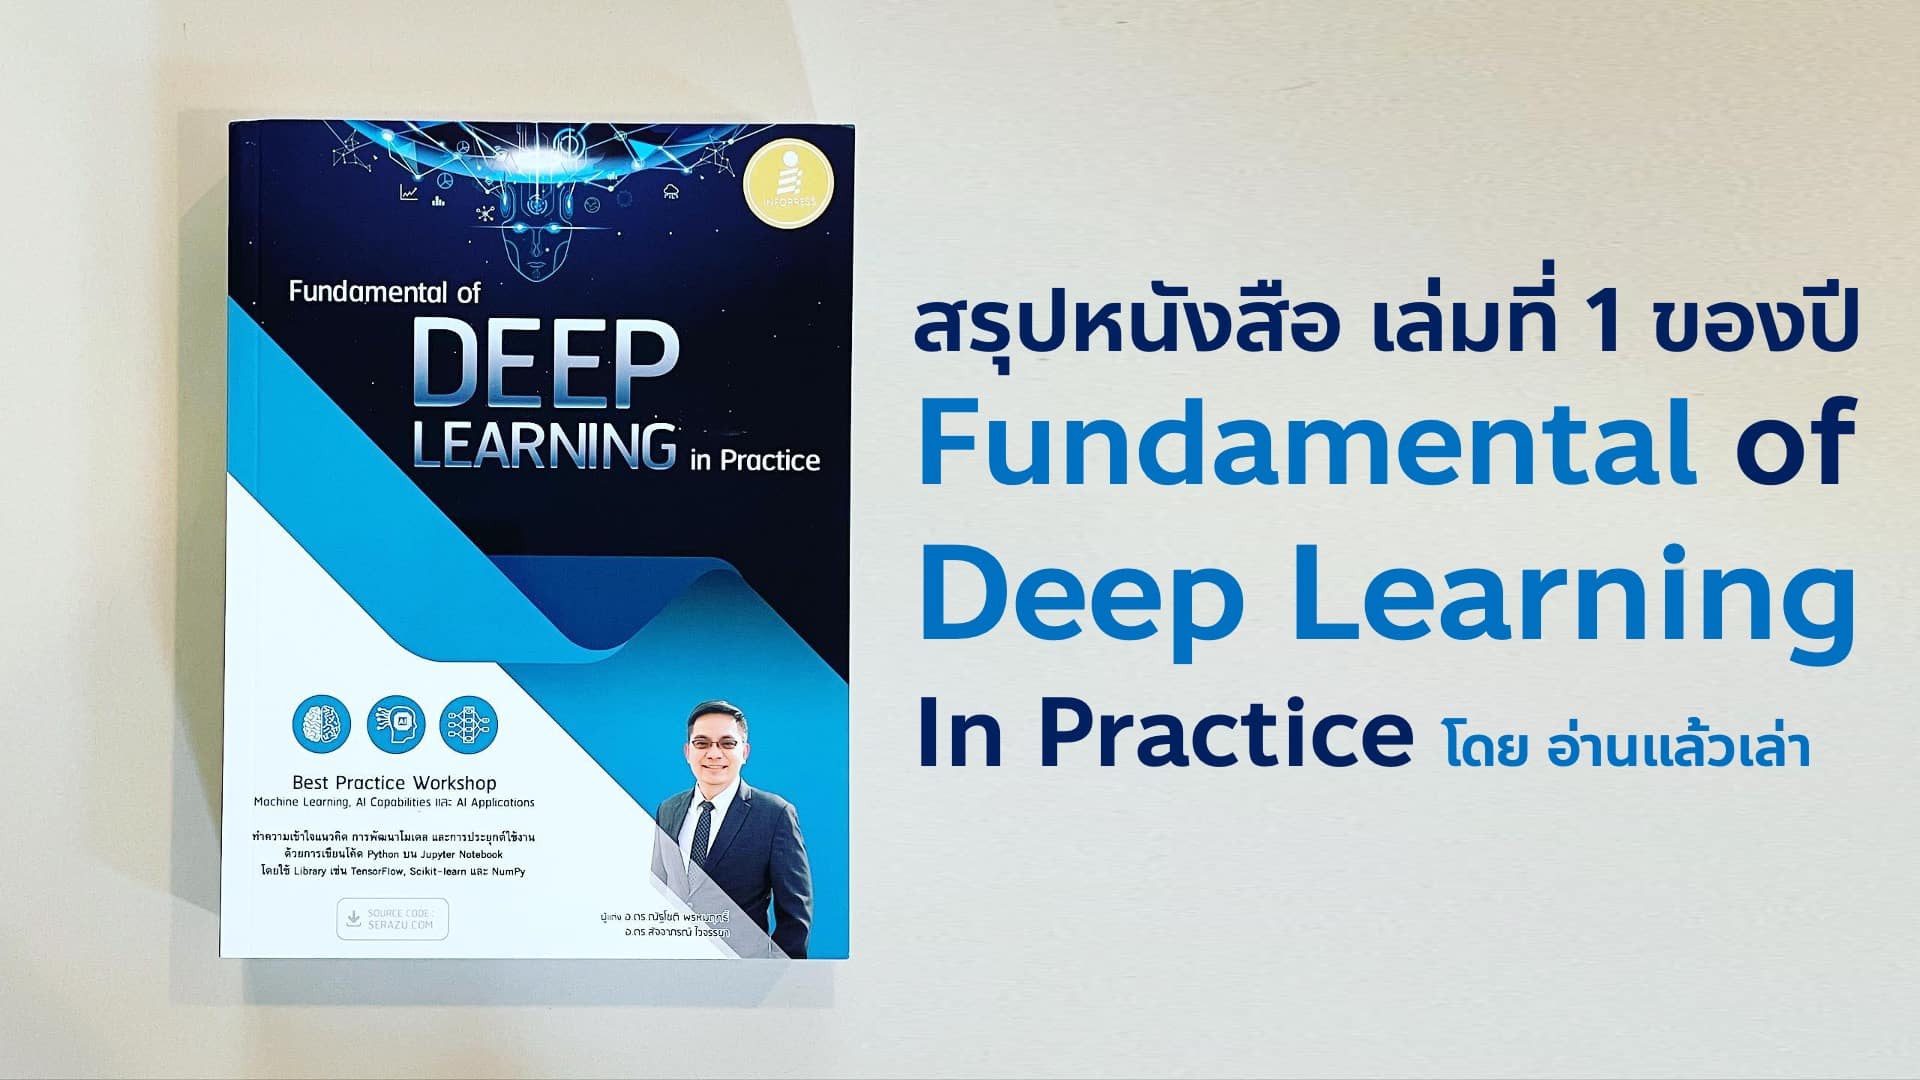 สรุปหนัง Fundamental of Deep Learning in Practive Best Practice Workshop Machine Learning, AI Capabilities และ AI Application ทำความเข้าใจแนวคิด การพัฒนาโมเดล และการประยุกต์ใช้งาน ด้วยการเขียนโค้ด Python บน Jupyter Notebook โดยใช้ Library เช่น TensorFlow, Scikit-learn และ NumPy ผู้แต่ง อ. ดร. ณัฐโชติ พรหมฤทธิ์ และ อ. ดร. สัจจาภรณ์ ไวจรรยา สำนักพิมพ์ Infopress